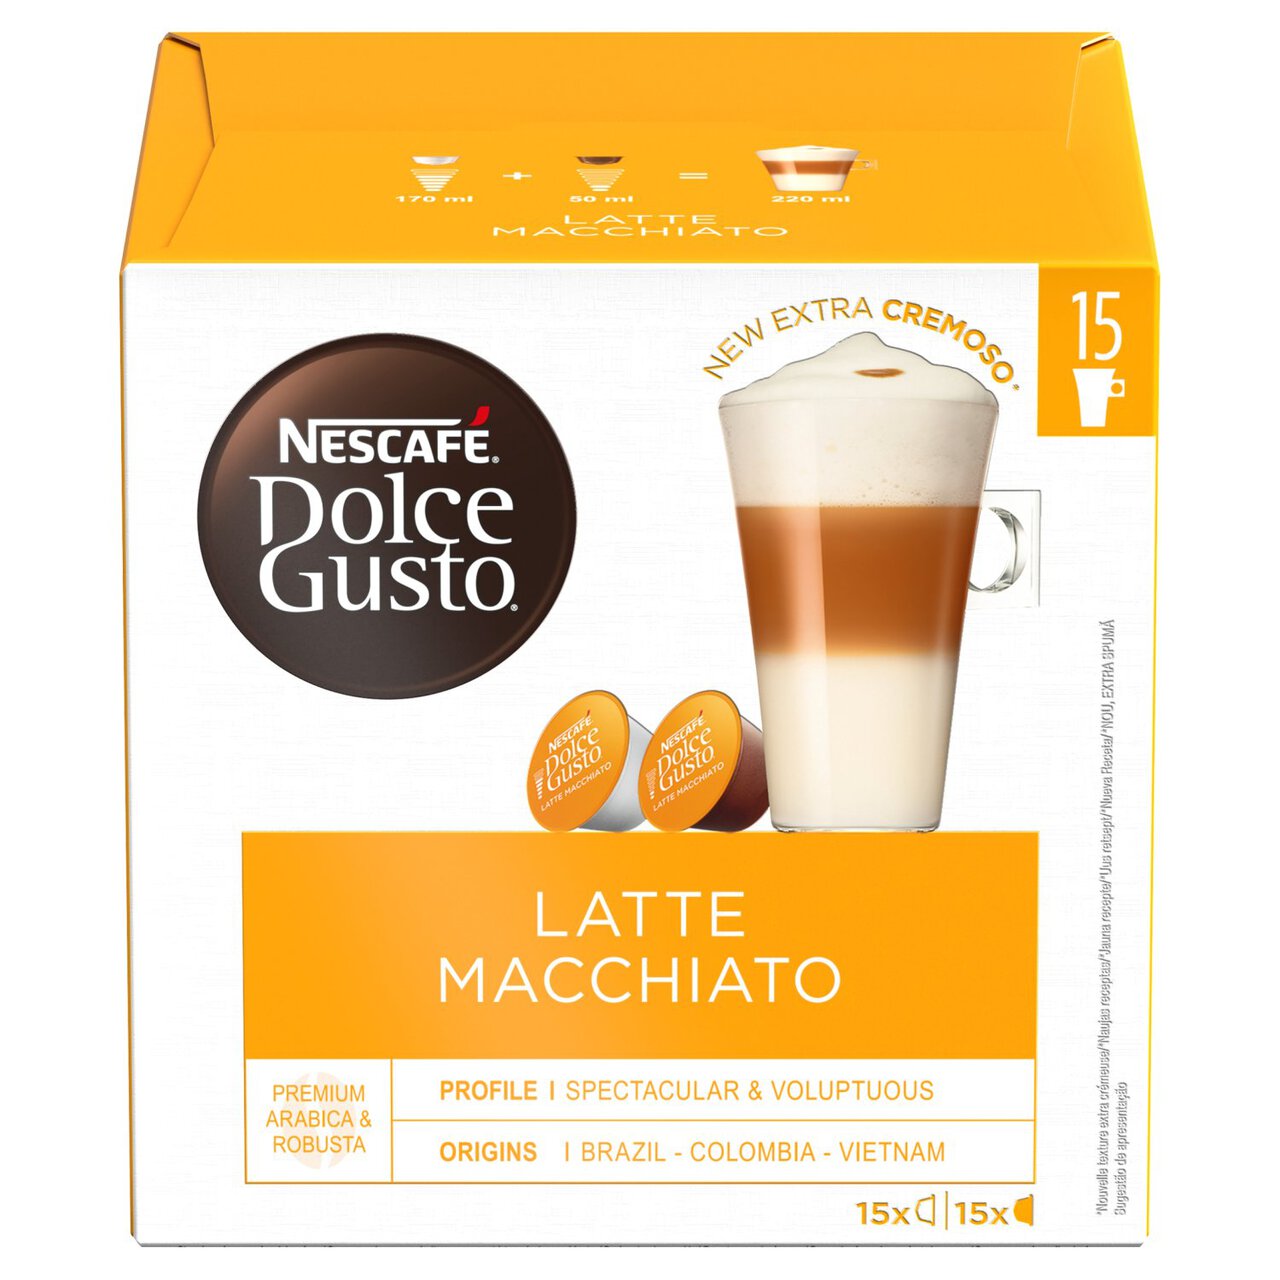 Nescafe Dolce Gusto Latte Macchiato 30 per pack